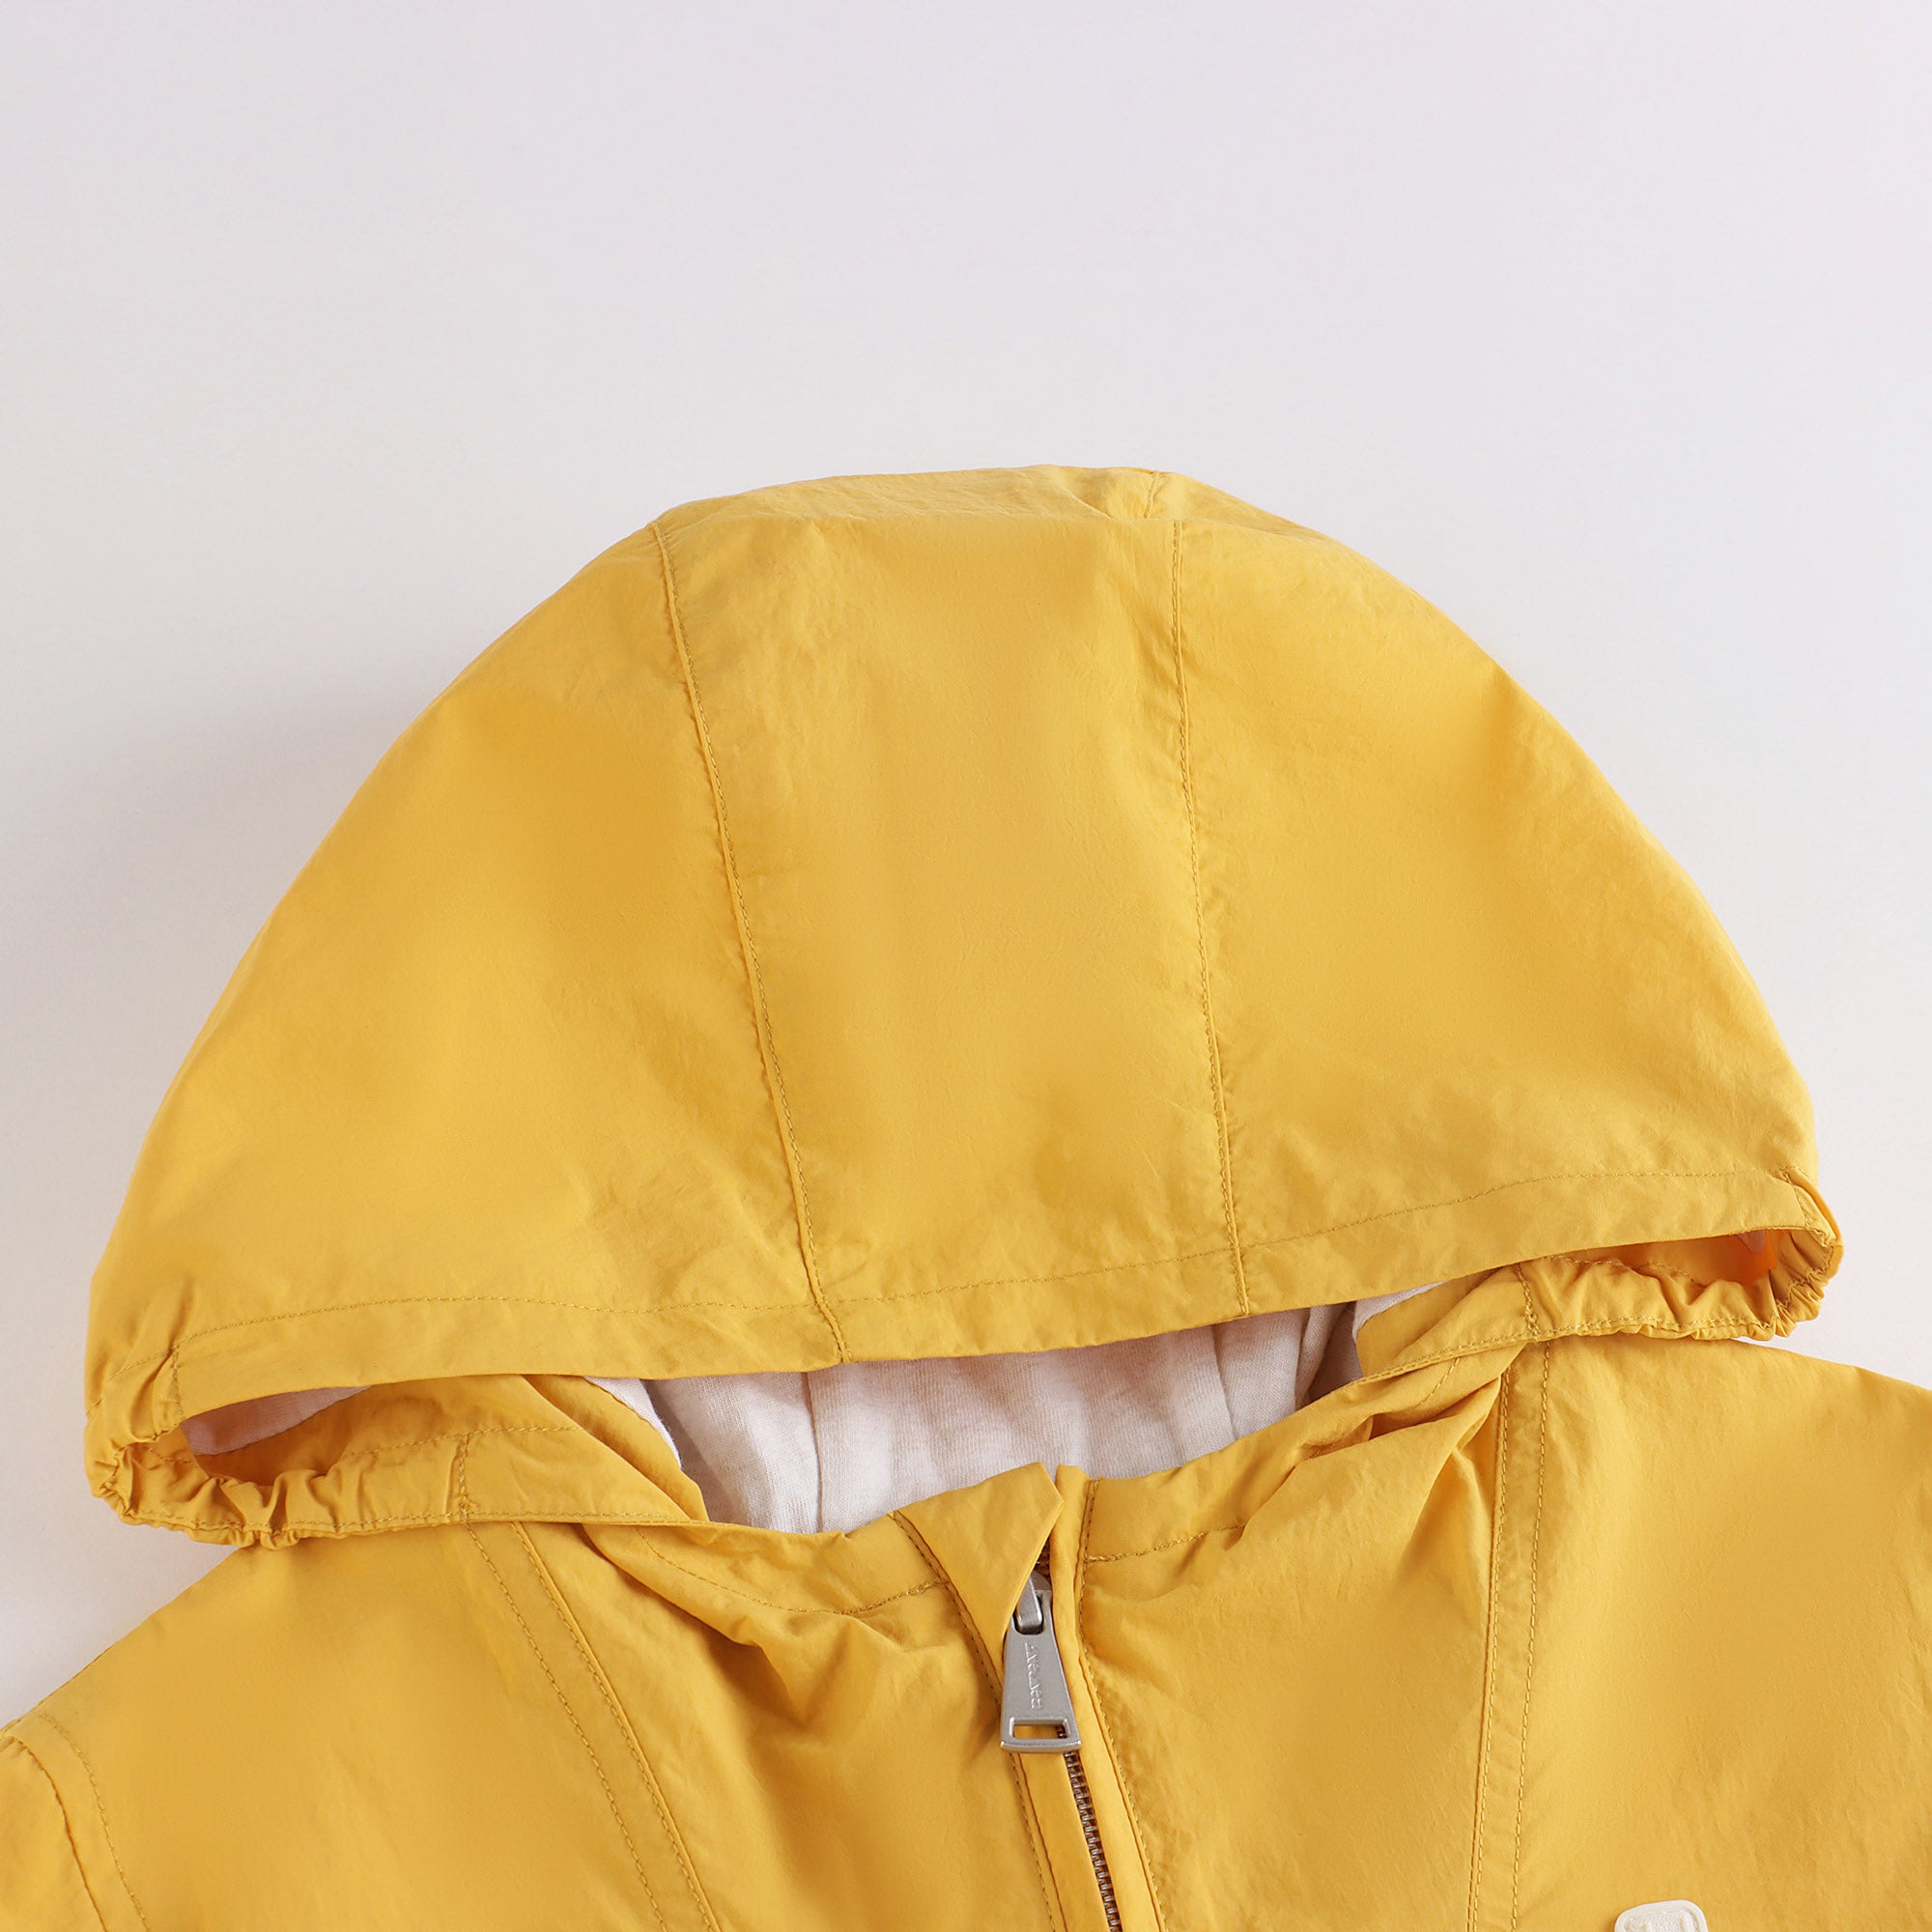 Boys Yellow Zip-Up Jacket